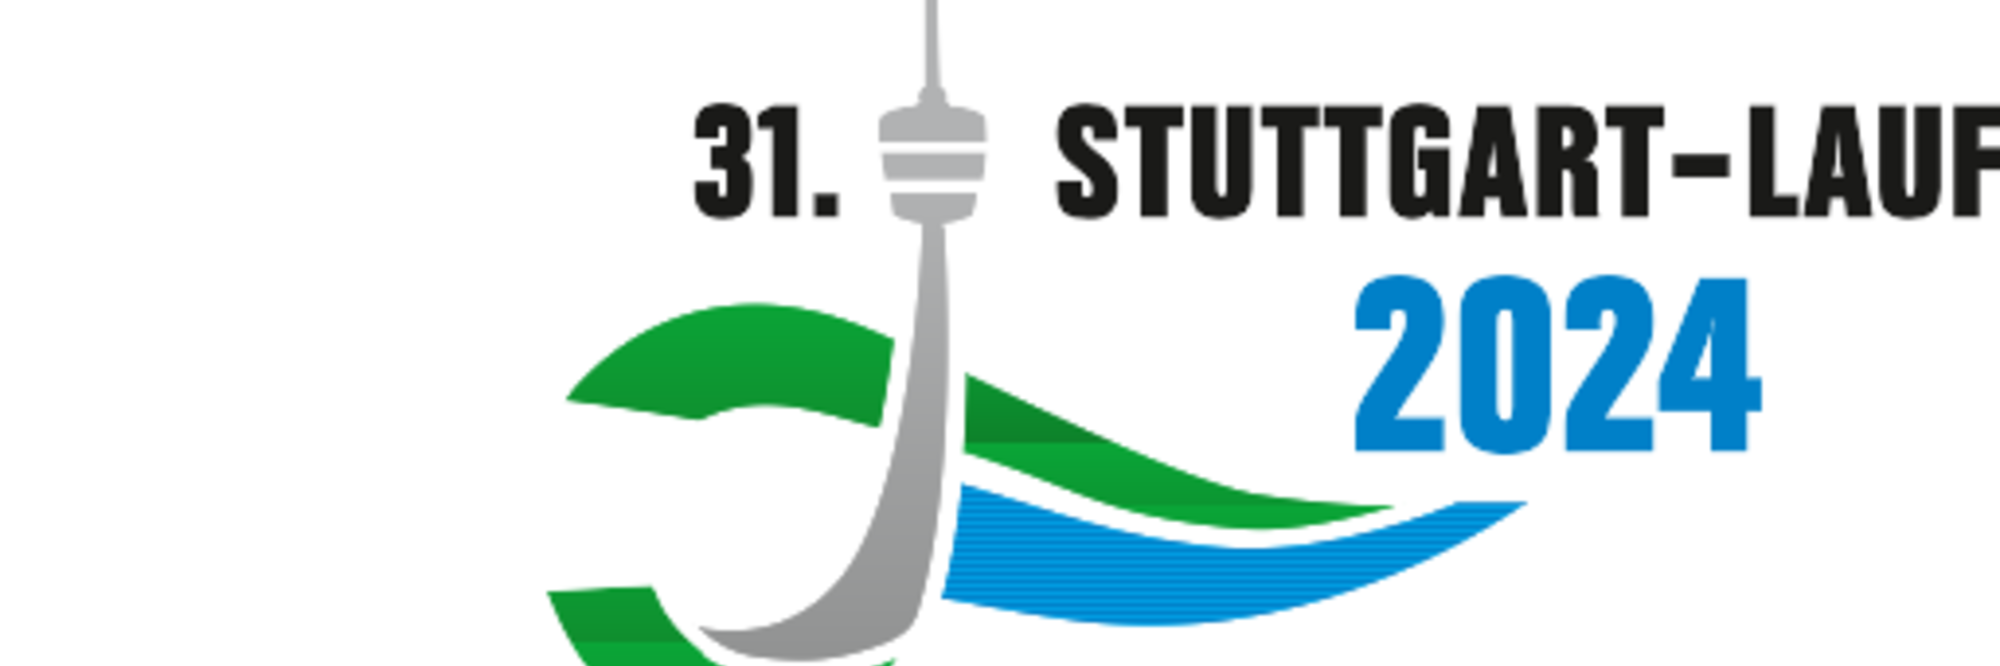 Stuttgart Lauf, Jolinchen Lauf und Minimarathon 2024